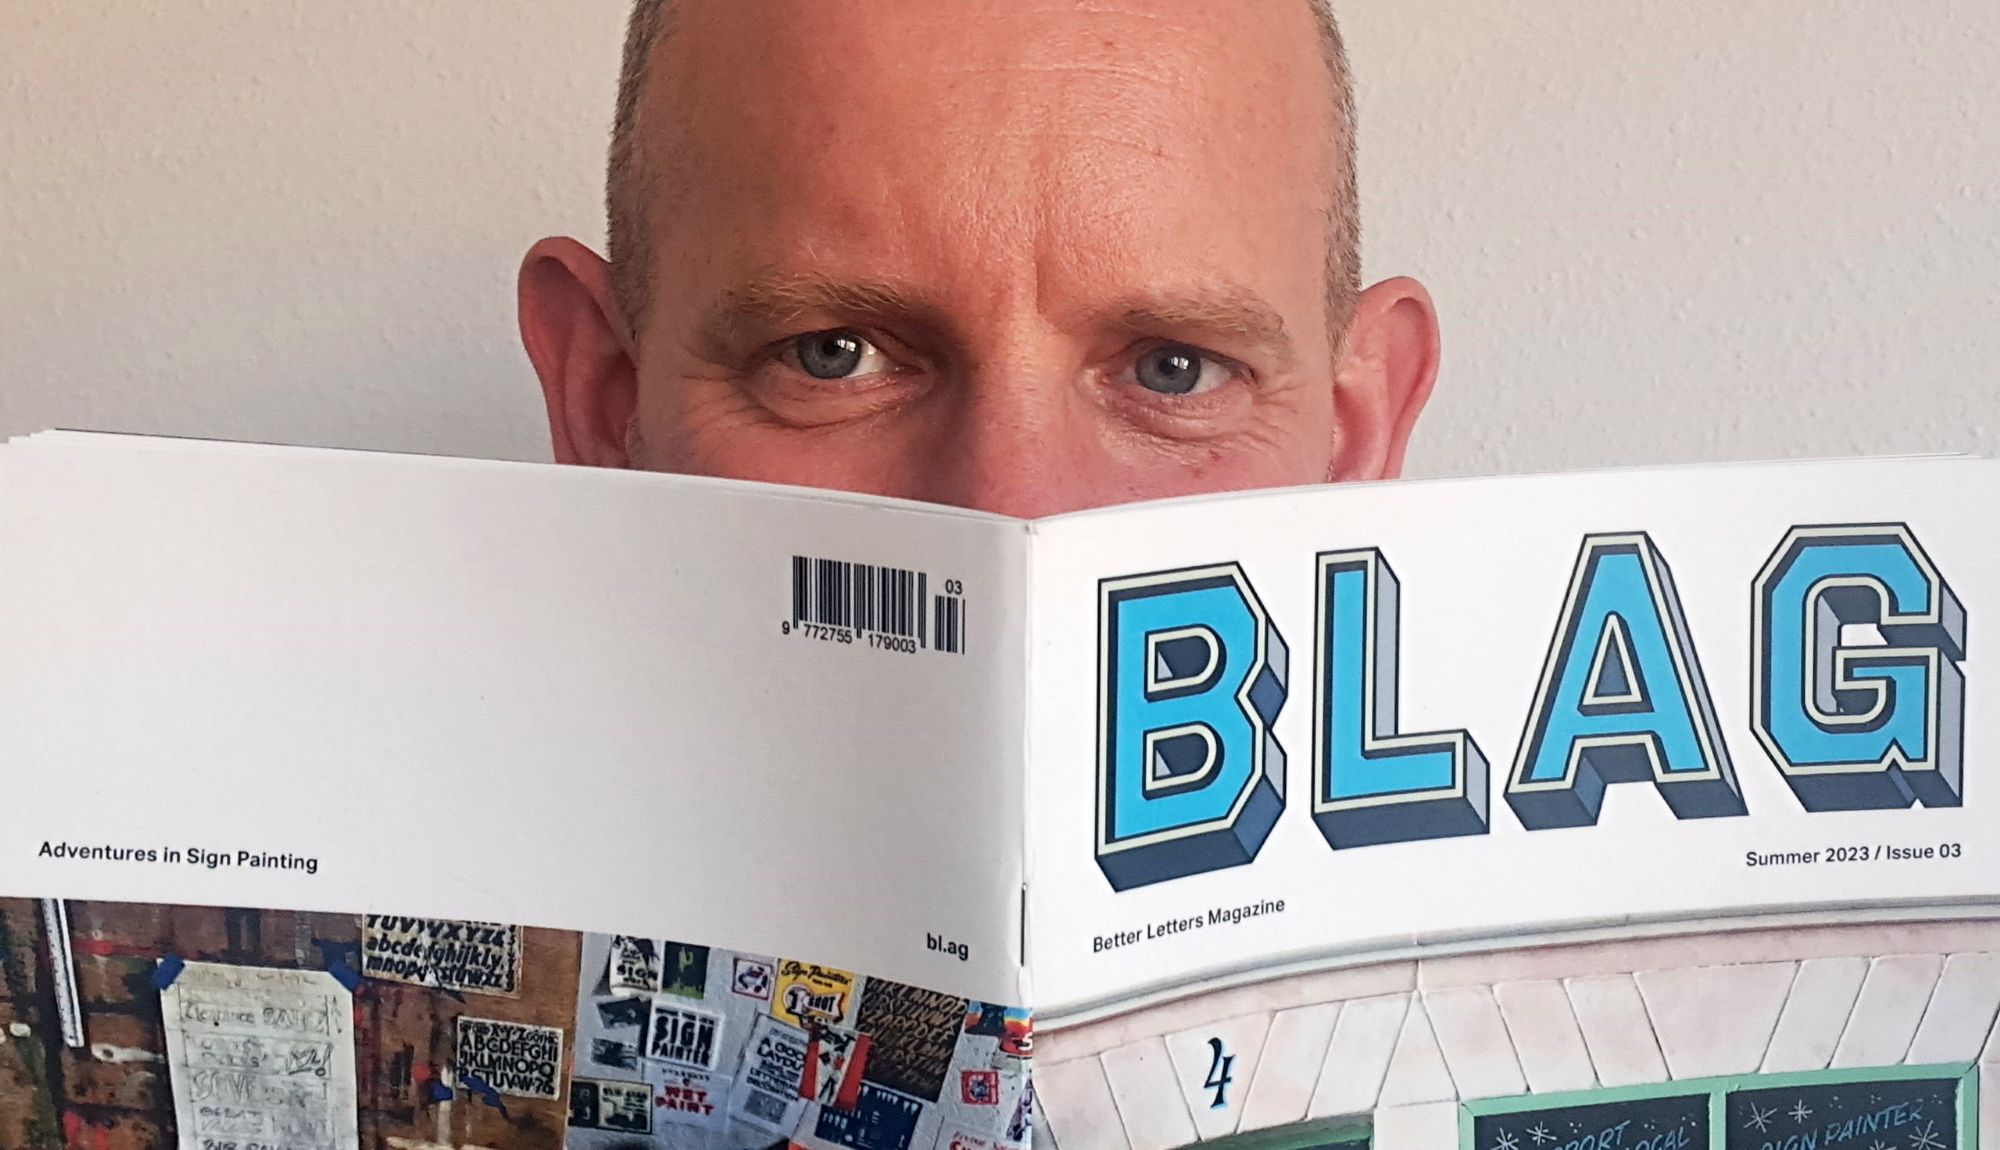 BLAG (Better Letters Magazine) — Brush Case